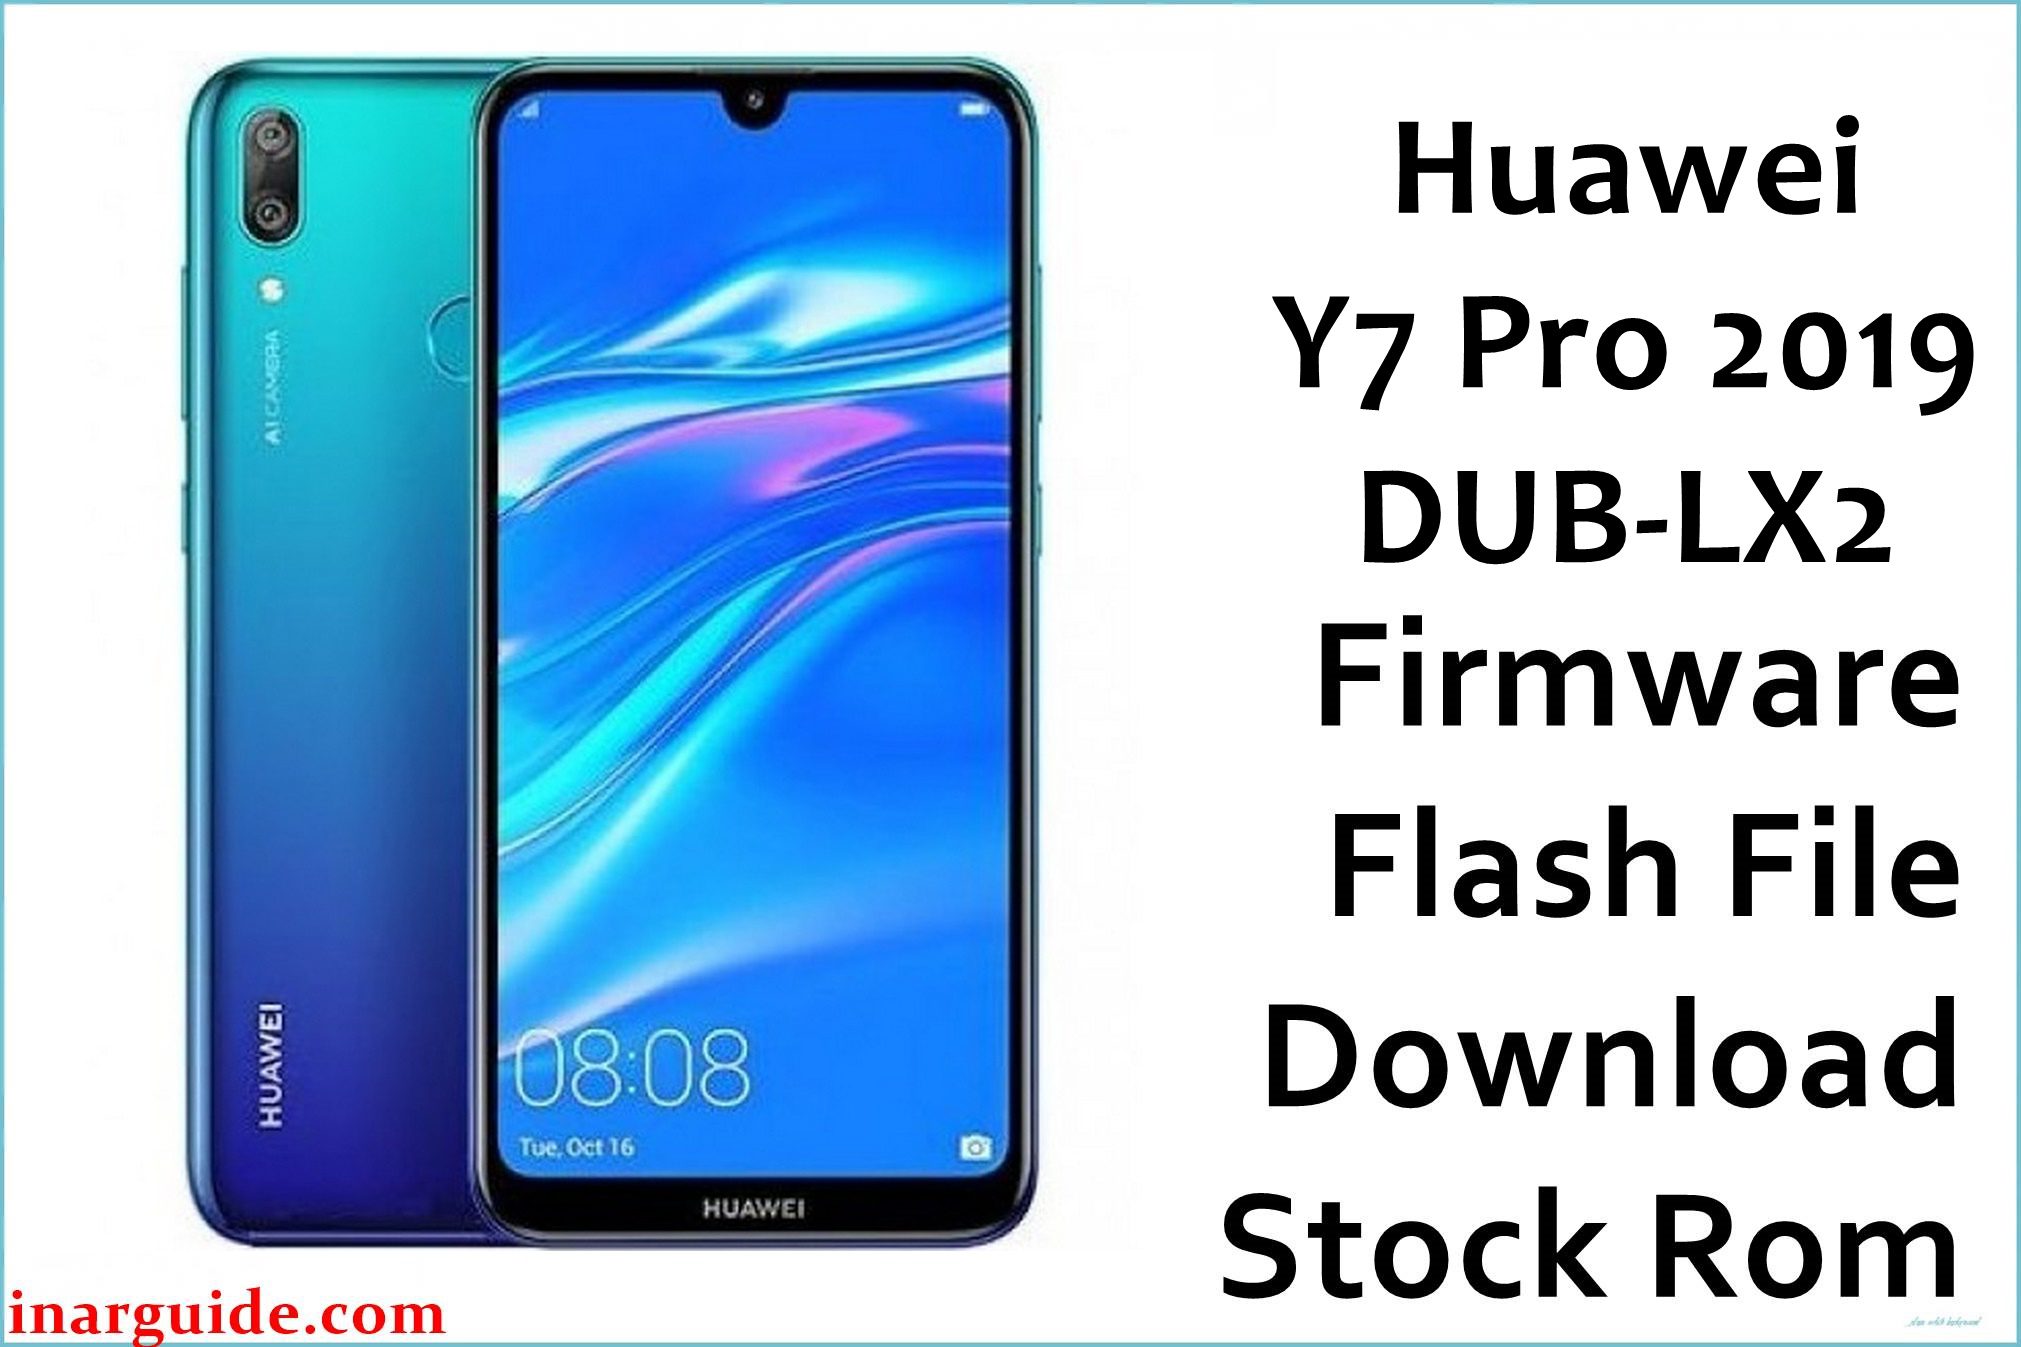 Huawei Y7 Pro 2019 DUB LX2